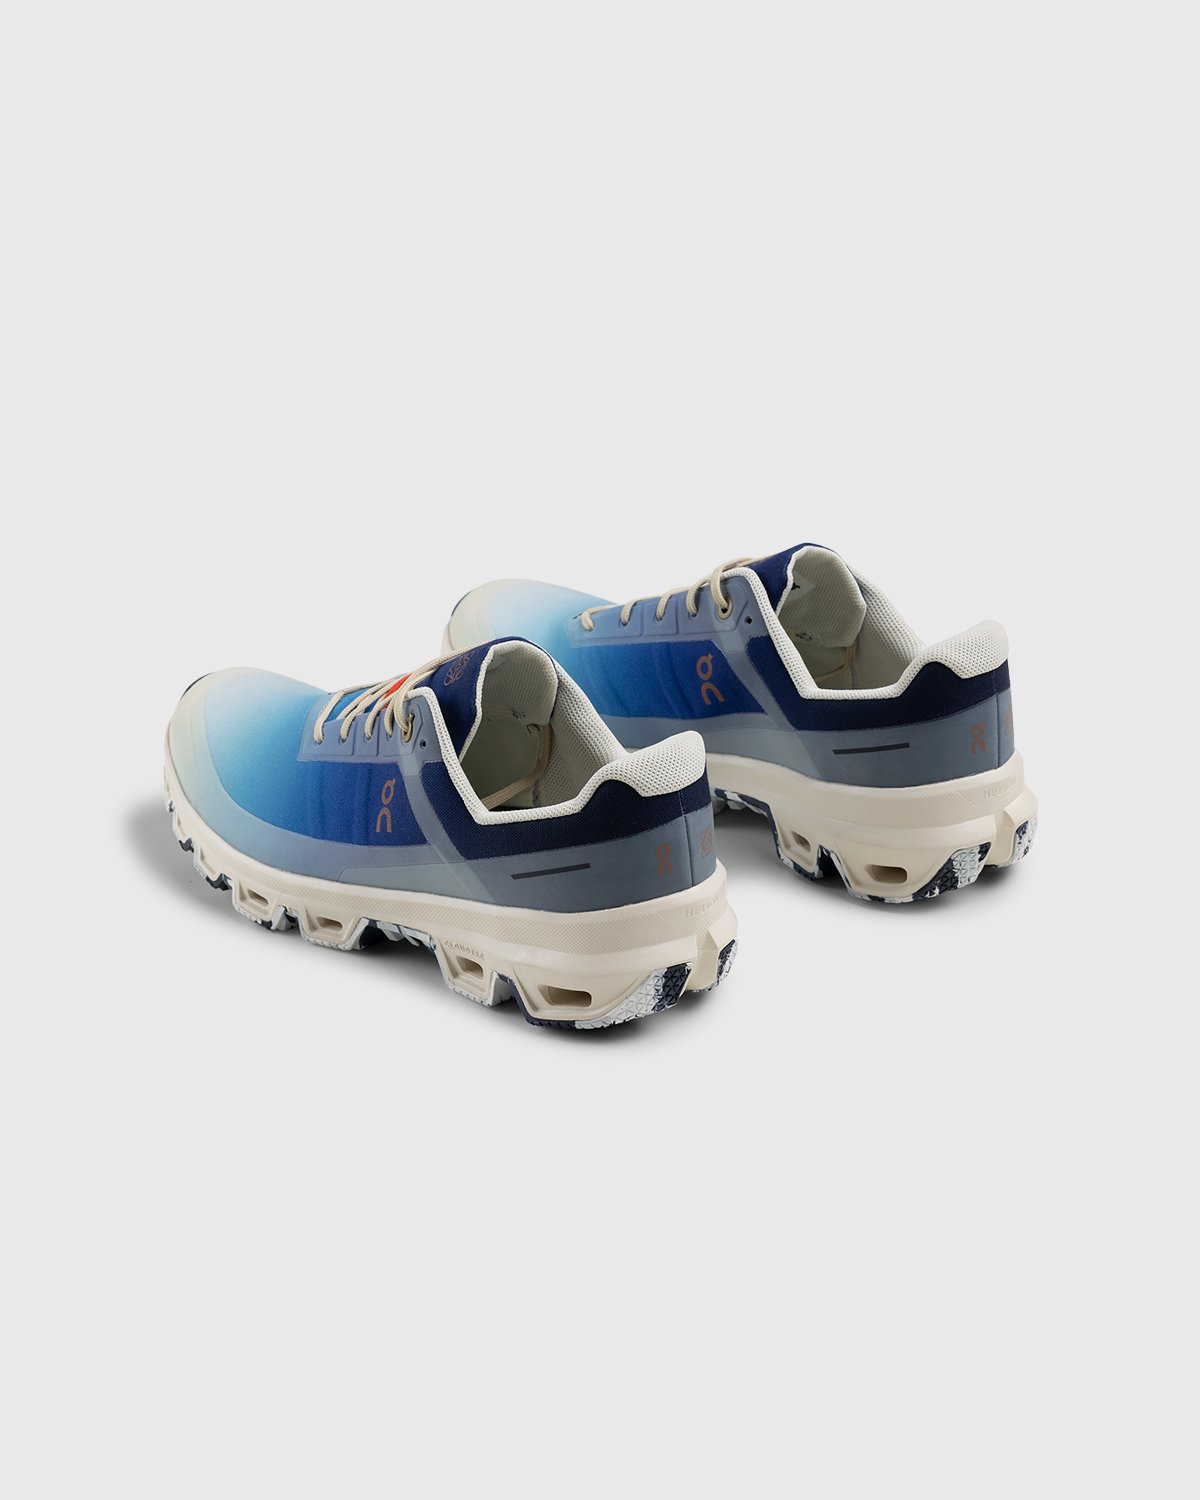 Loewe x On - Men's Cloudventure Gradient Blue - Footwear - Blue - Image 4